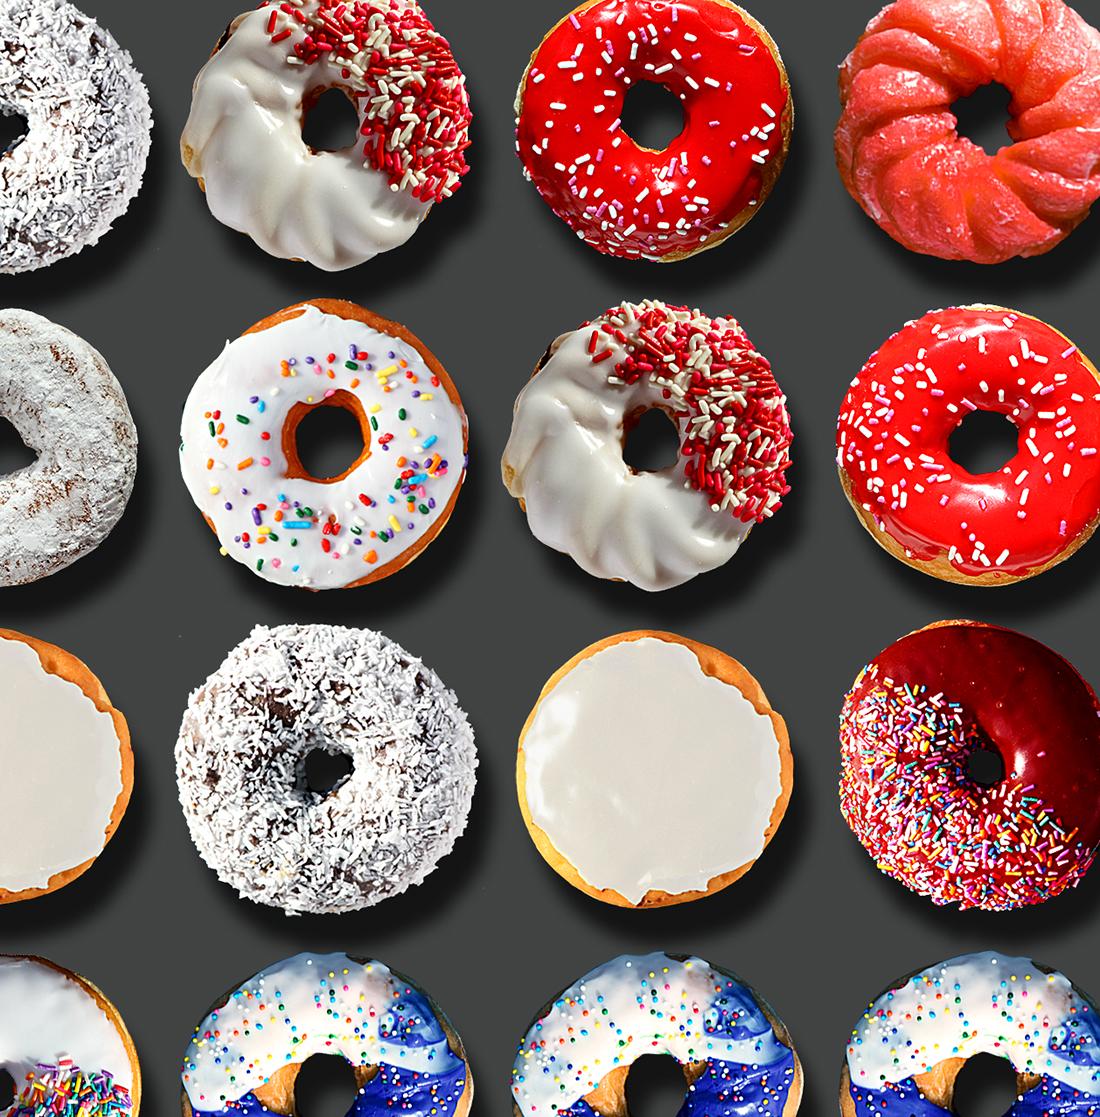 Sie haben in den sozialen Medien weltweit von den außergewöhnlichen Donut-Porträts von Candice CMC gelesen, und wir sind begeistert und stolz, ihre Arbeit zu vertreten.

Wir haben in diese Auflistung ein Bild aus dem weltweiten Social Media Buzz